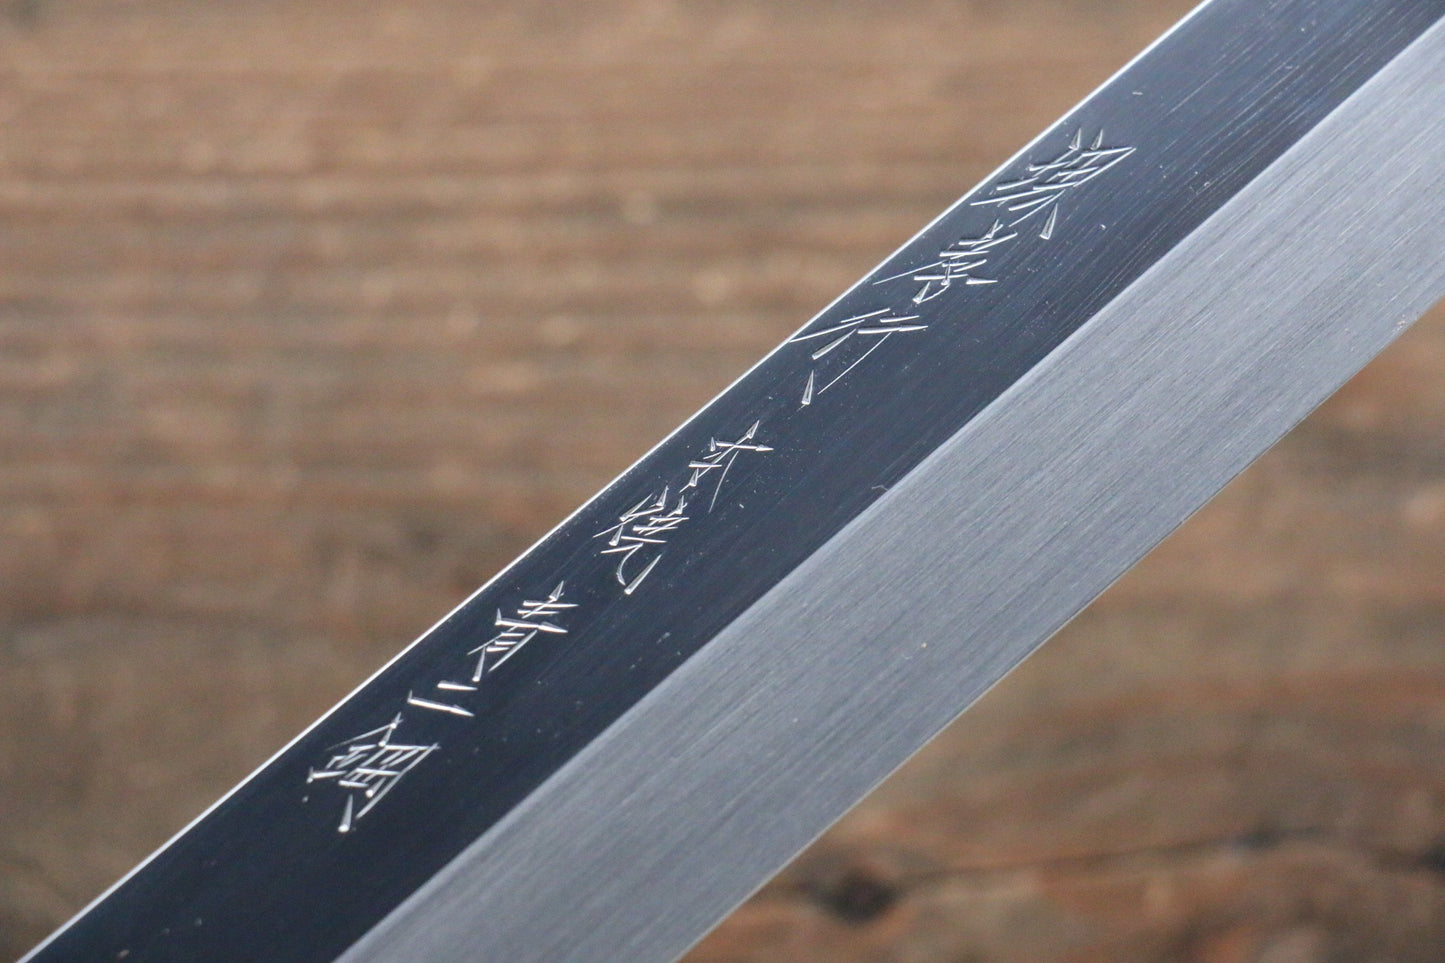 Sakai Takayuki Honyaki Blue Steel No.2 Mirrored Finish Sakimaru Takohiki Japanese Knife 300mm with Ebony with Ring Handle with Saya - Japanny - Best Japanese Knife